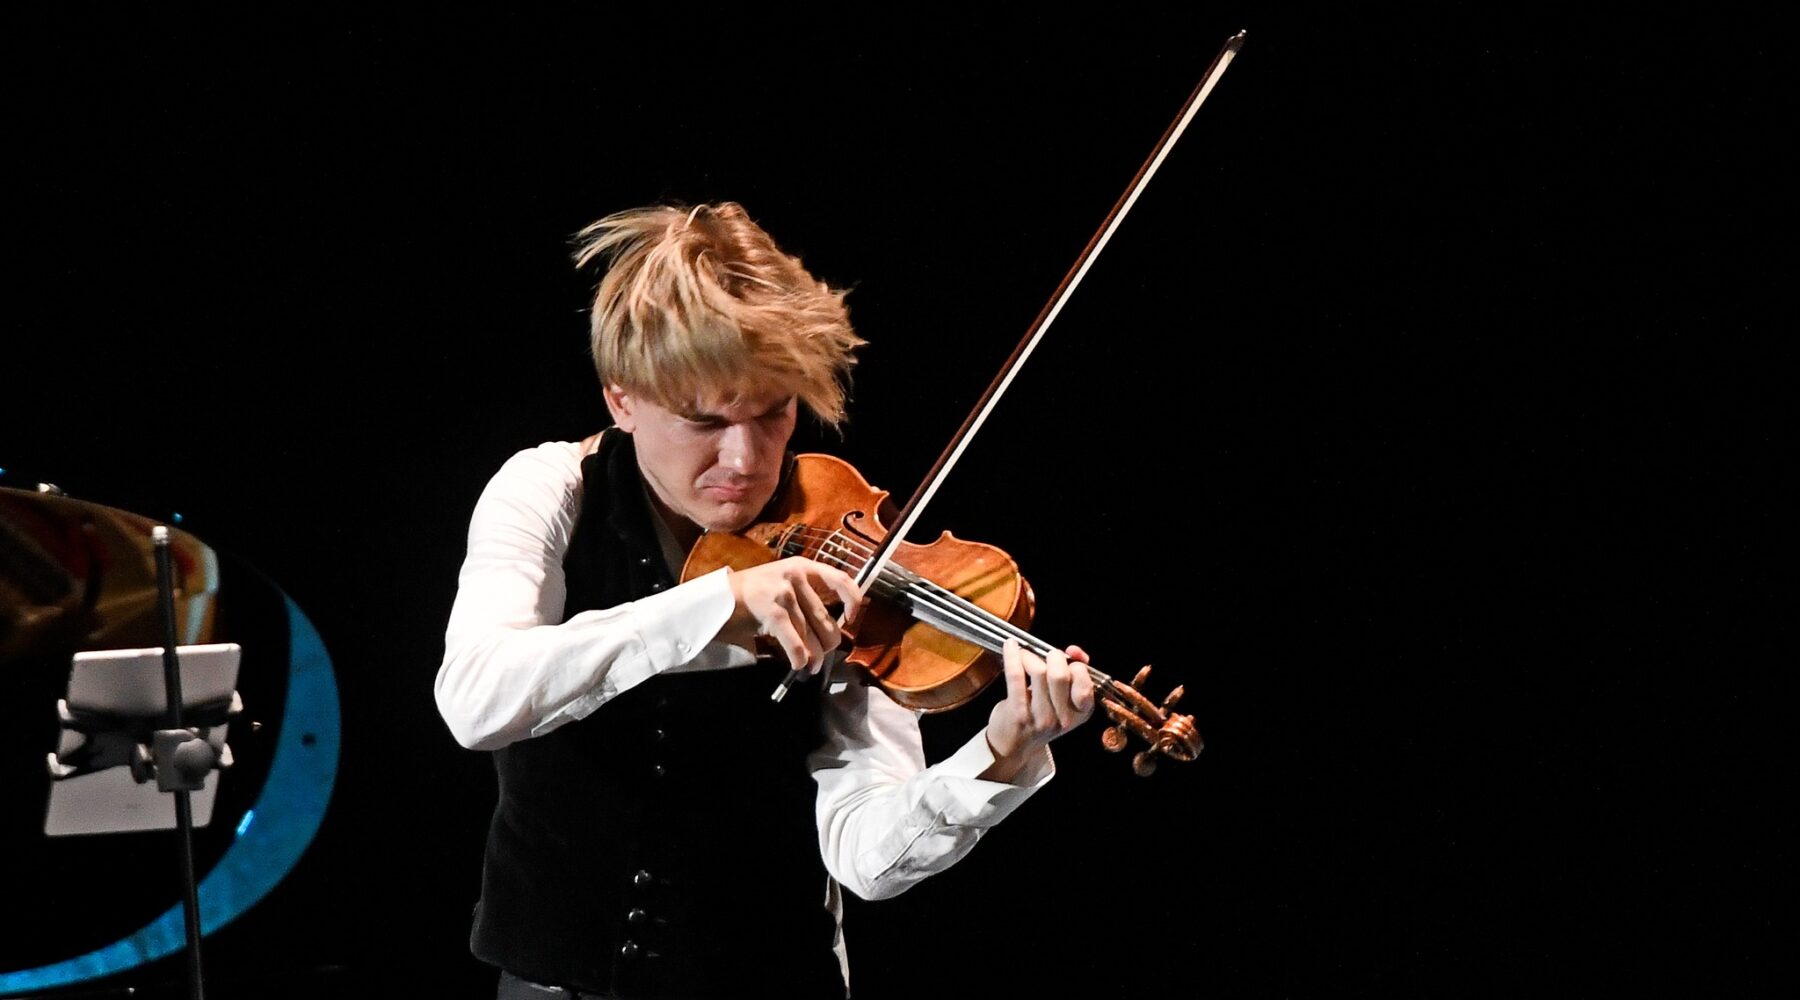 Destacado violinista austriaco Yury Revich y el pianista chileno Danor Quinteros presentarán concierto de pascua en Teatro Regional Cervantes